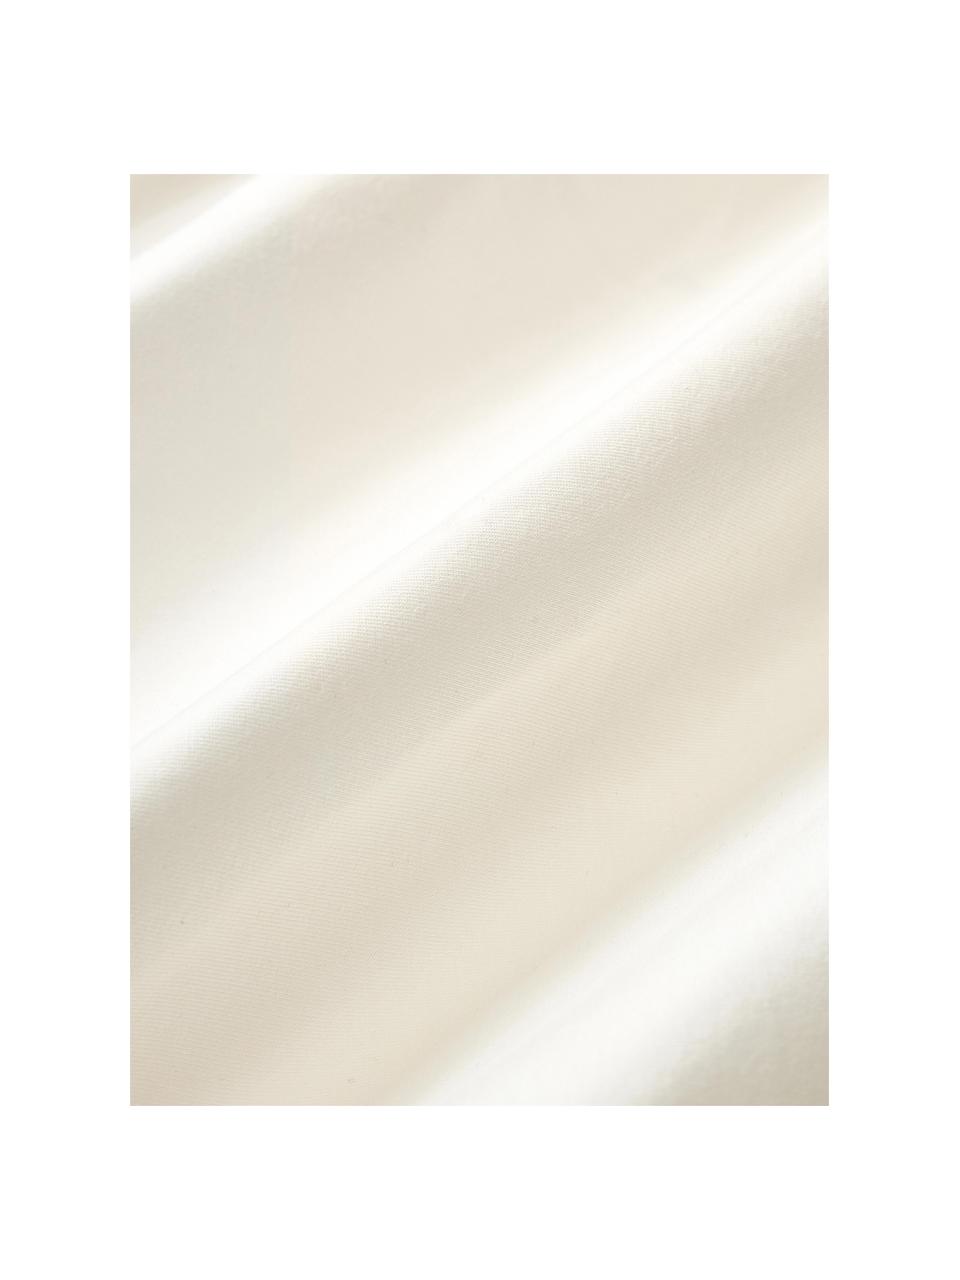 Elastická plachta na  kontinentálnu posteľ Lara, 95 % bavlna, 5 % elastan
Hustota vlákna 160 TC, kvalita štandard

Posteľná bielizeň z bavlny je príjemná na dotyk, dobre absorbuje vlhkosť a je vhodná pre alergikov

Materiál použitý v tomto produkte bol testovaný na škodlivé látky a certifikovaný podľa STANDARD 100 by OEKO-TEX®, 4854CIT, CITEVE, Krémovobiela, Š 90 x D 200 cm, V 35 cm